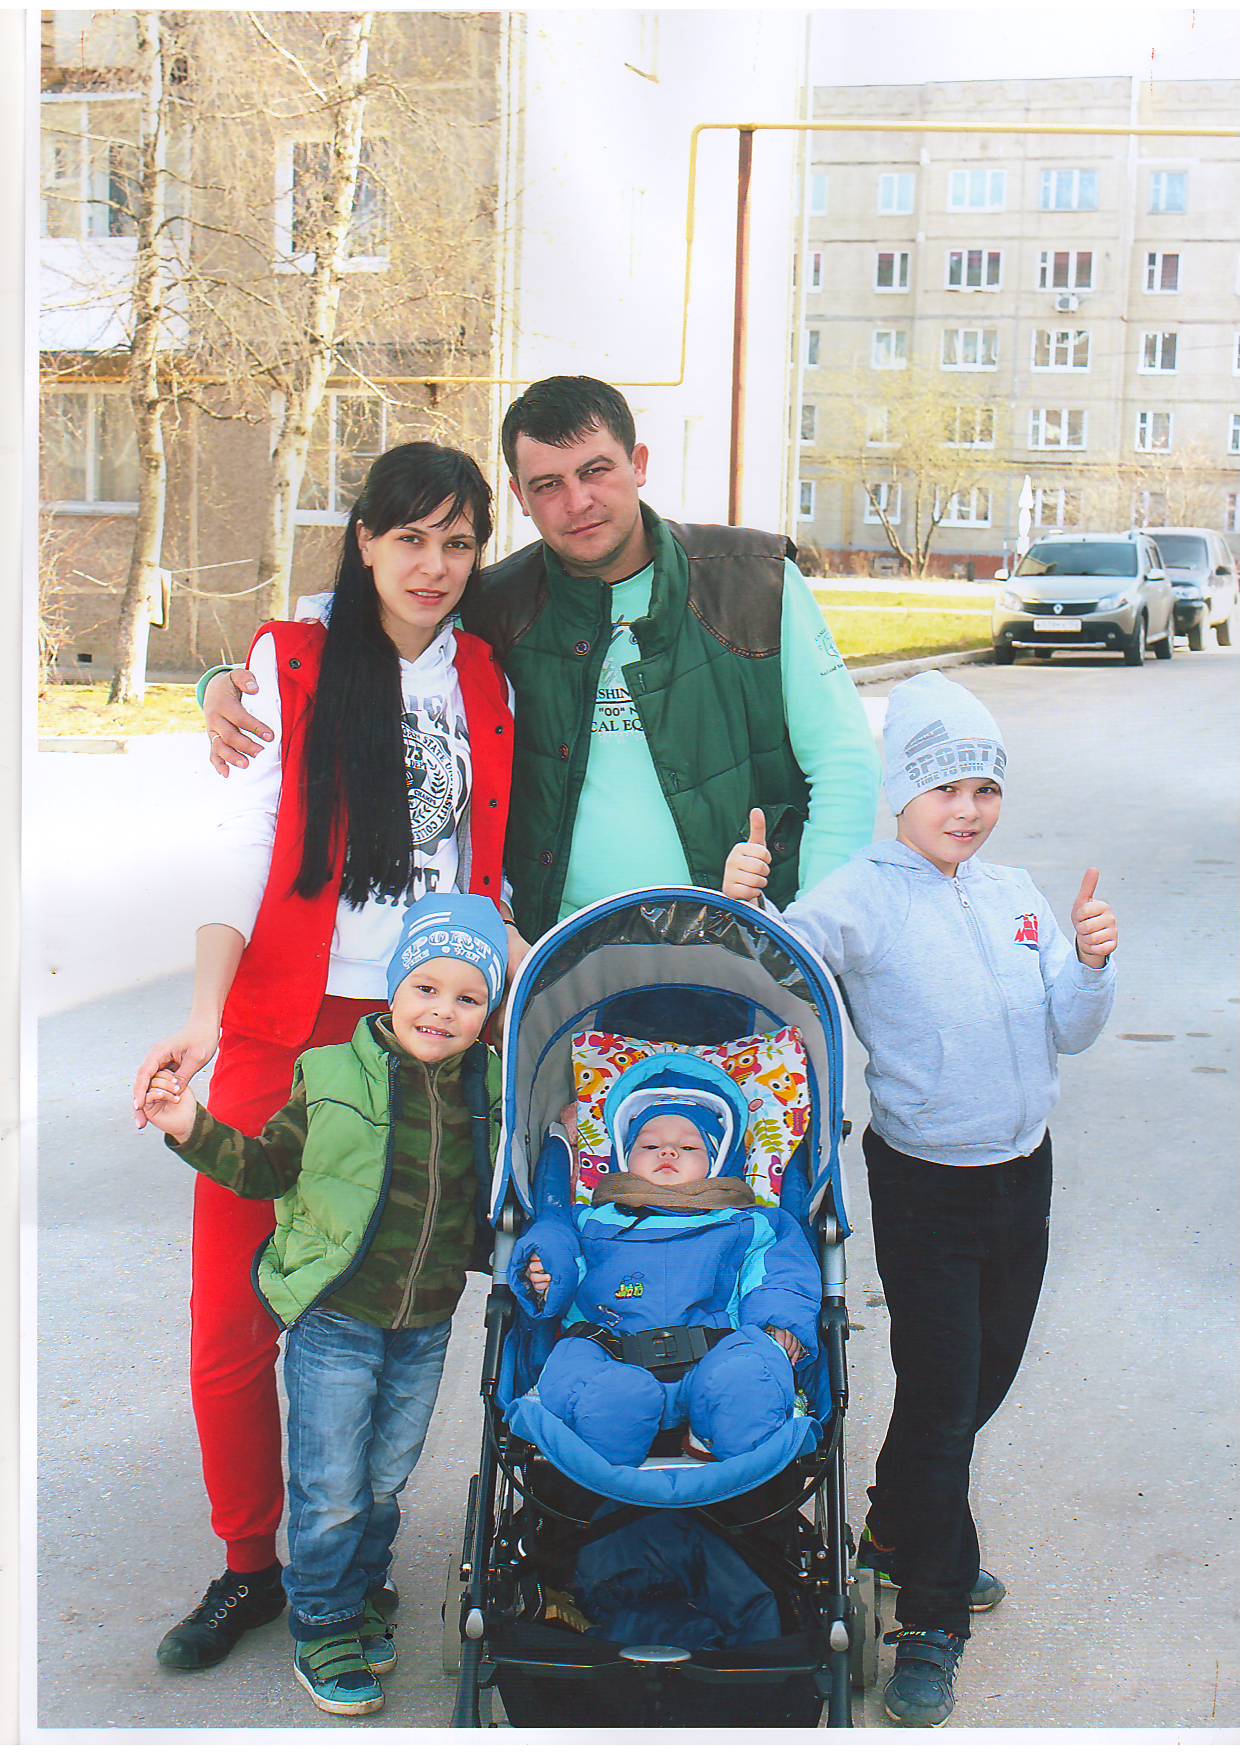 Нижегородский кредитный союз в Семенове - семья где живет любовь